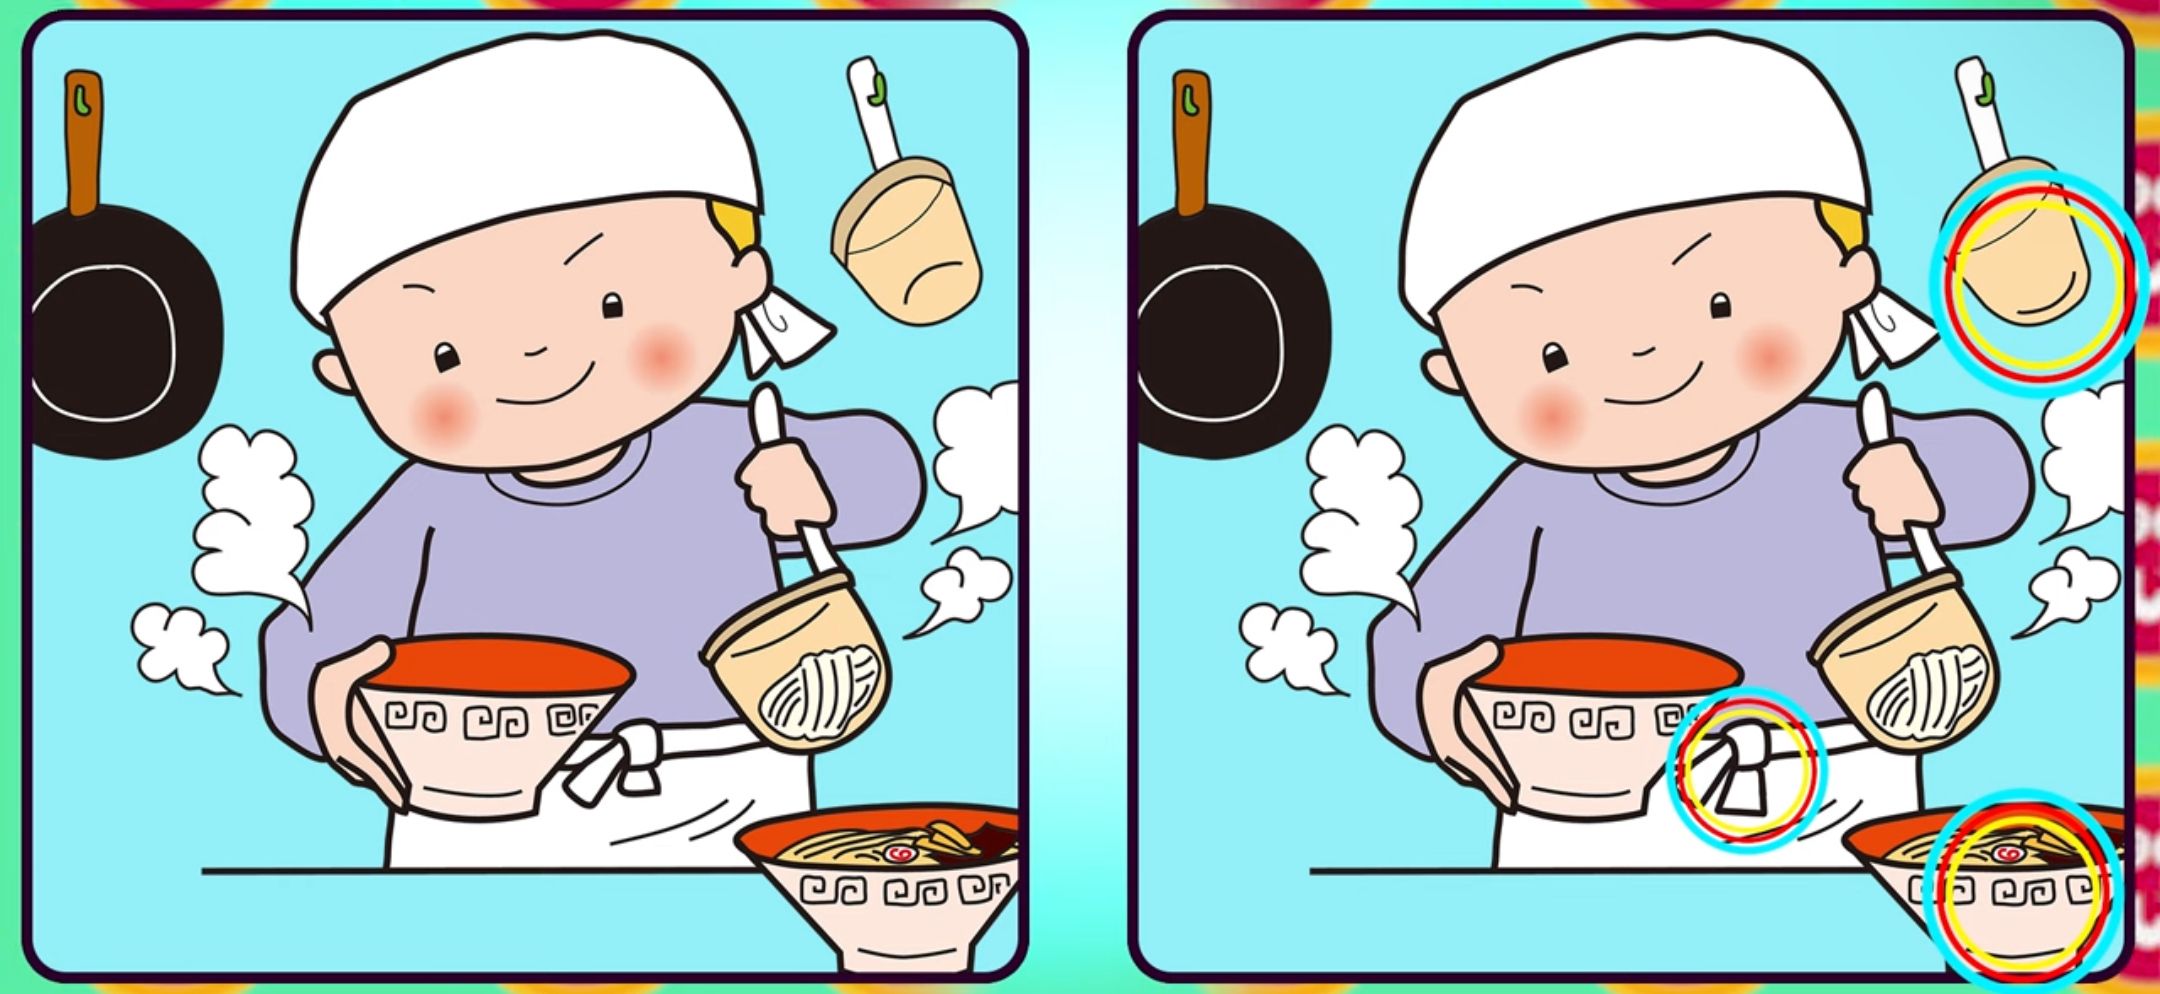 Jawaban tes IQ dalam menemukan perbedaan gambar koki handal. 